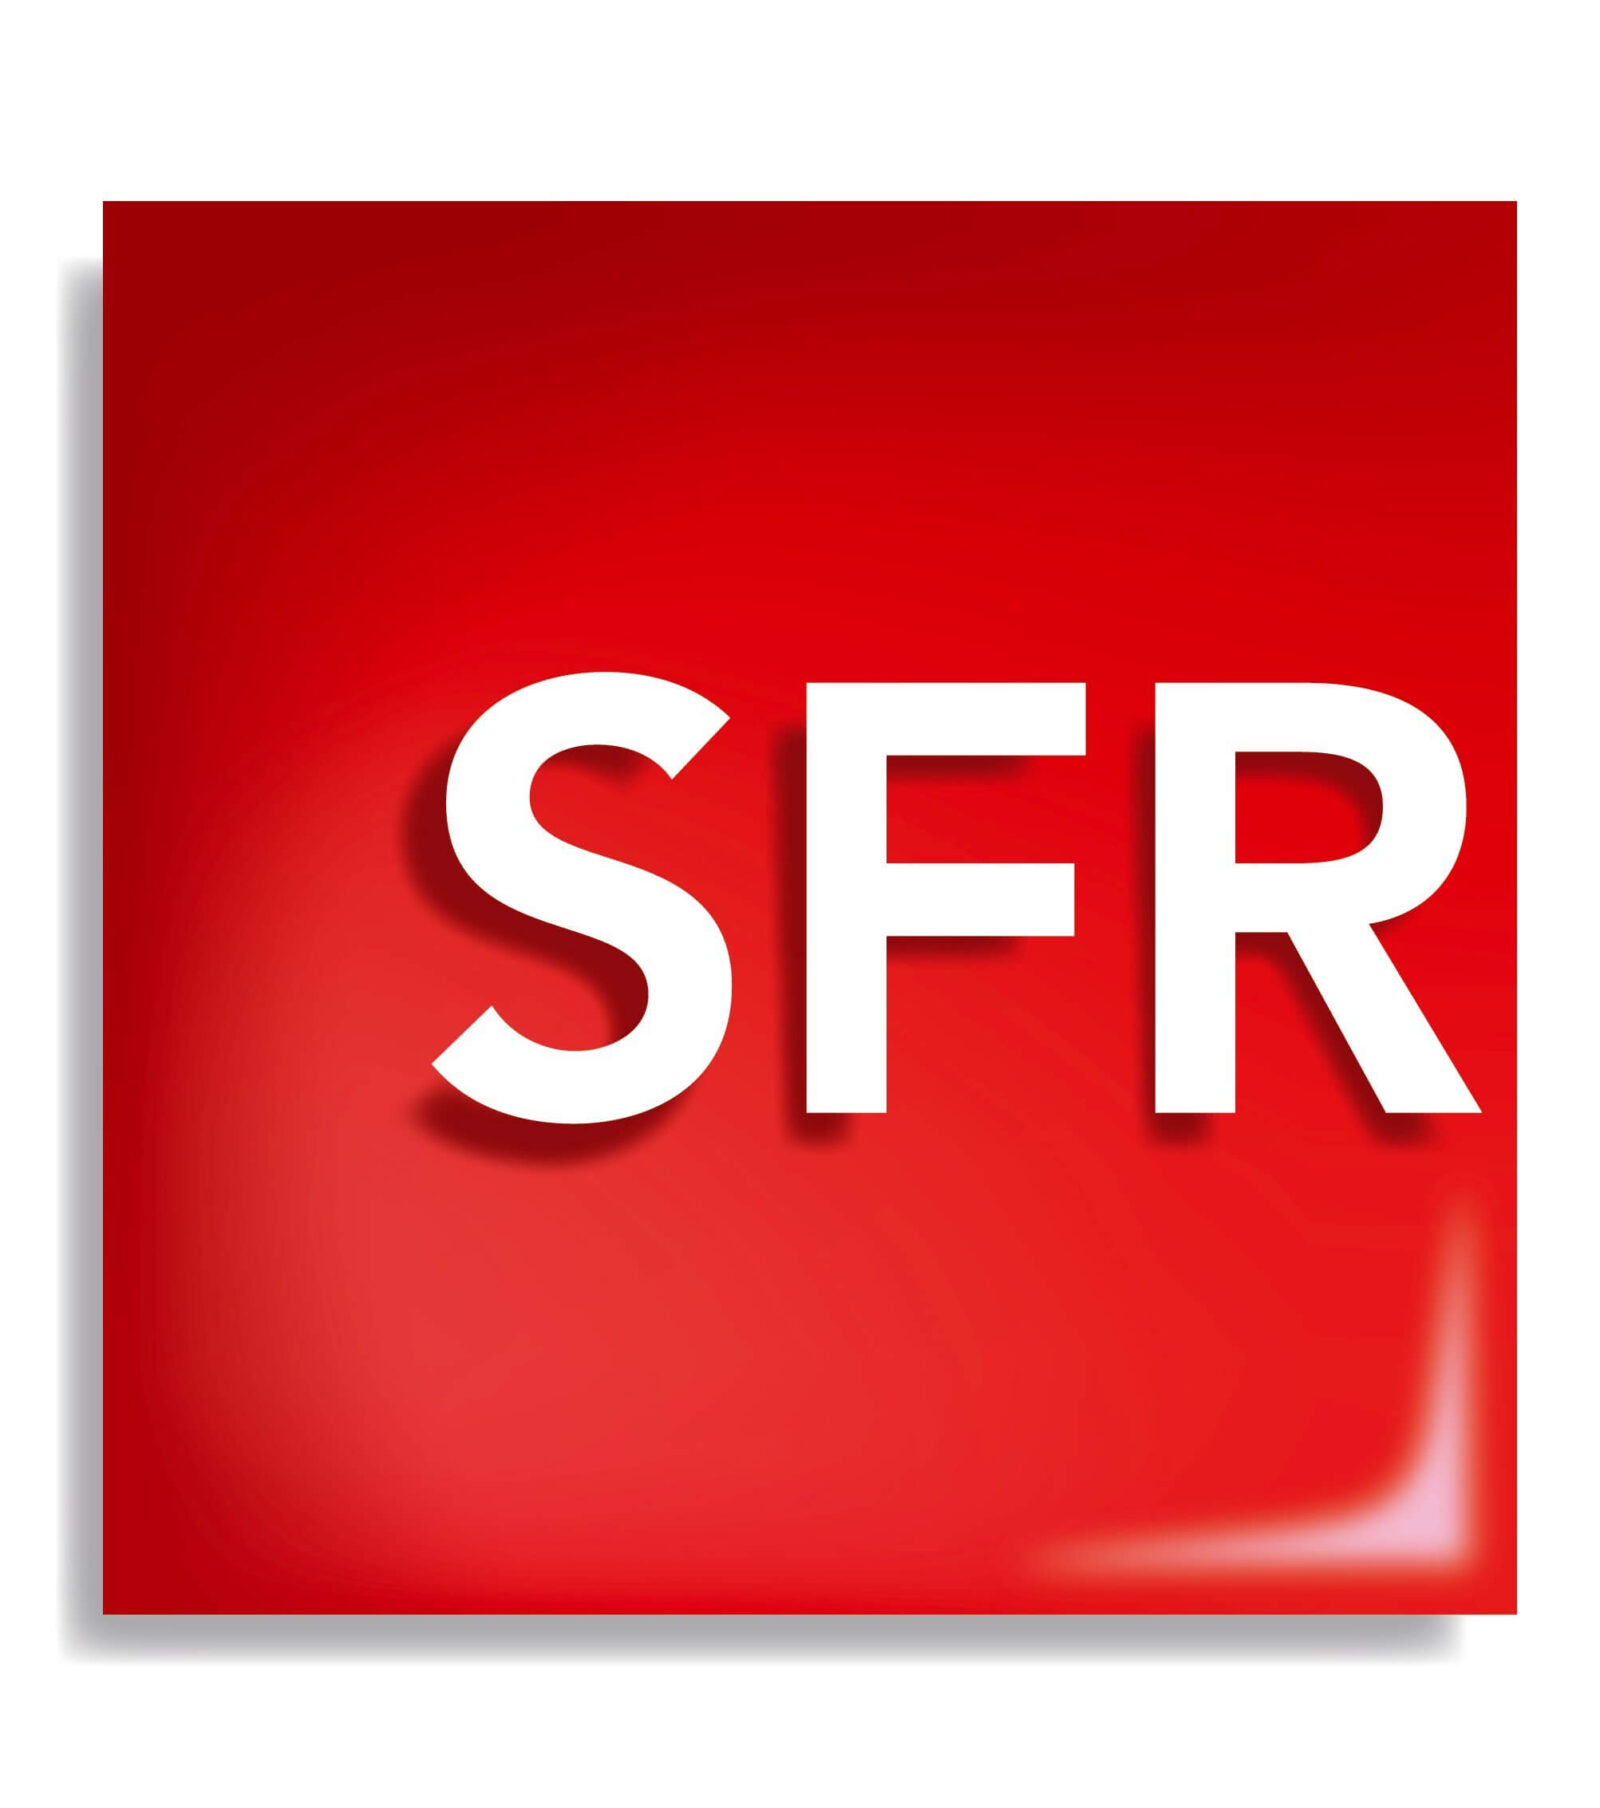 SFR, L’arrivée de nombreux clients a fait bugger le système informatique de SFR